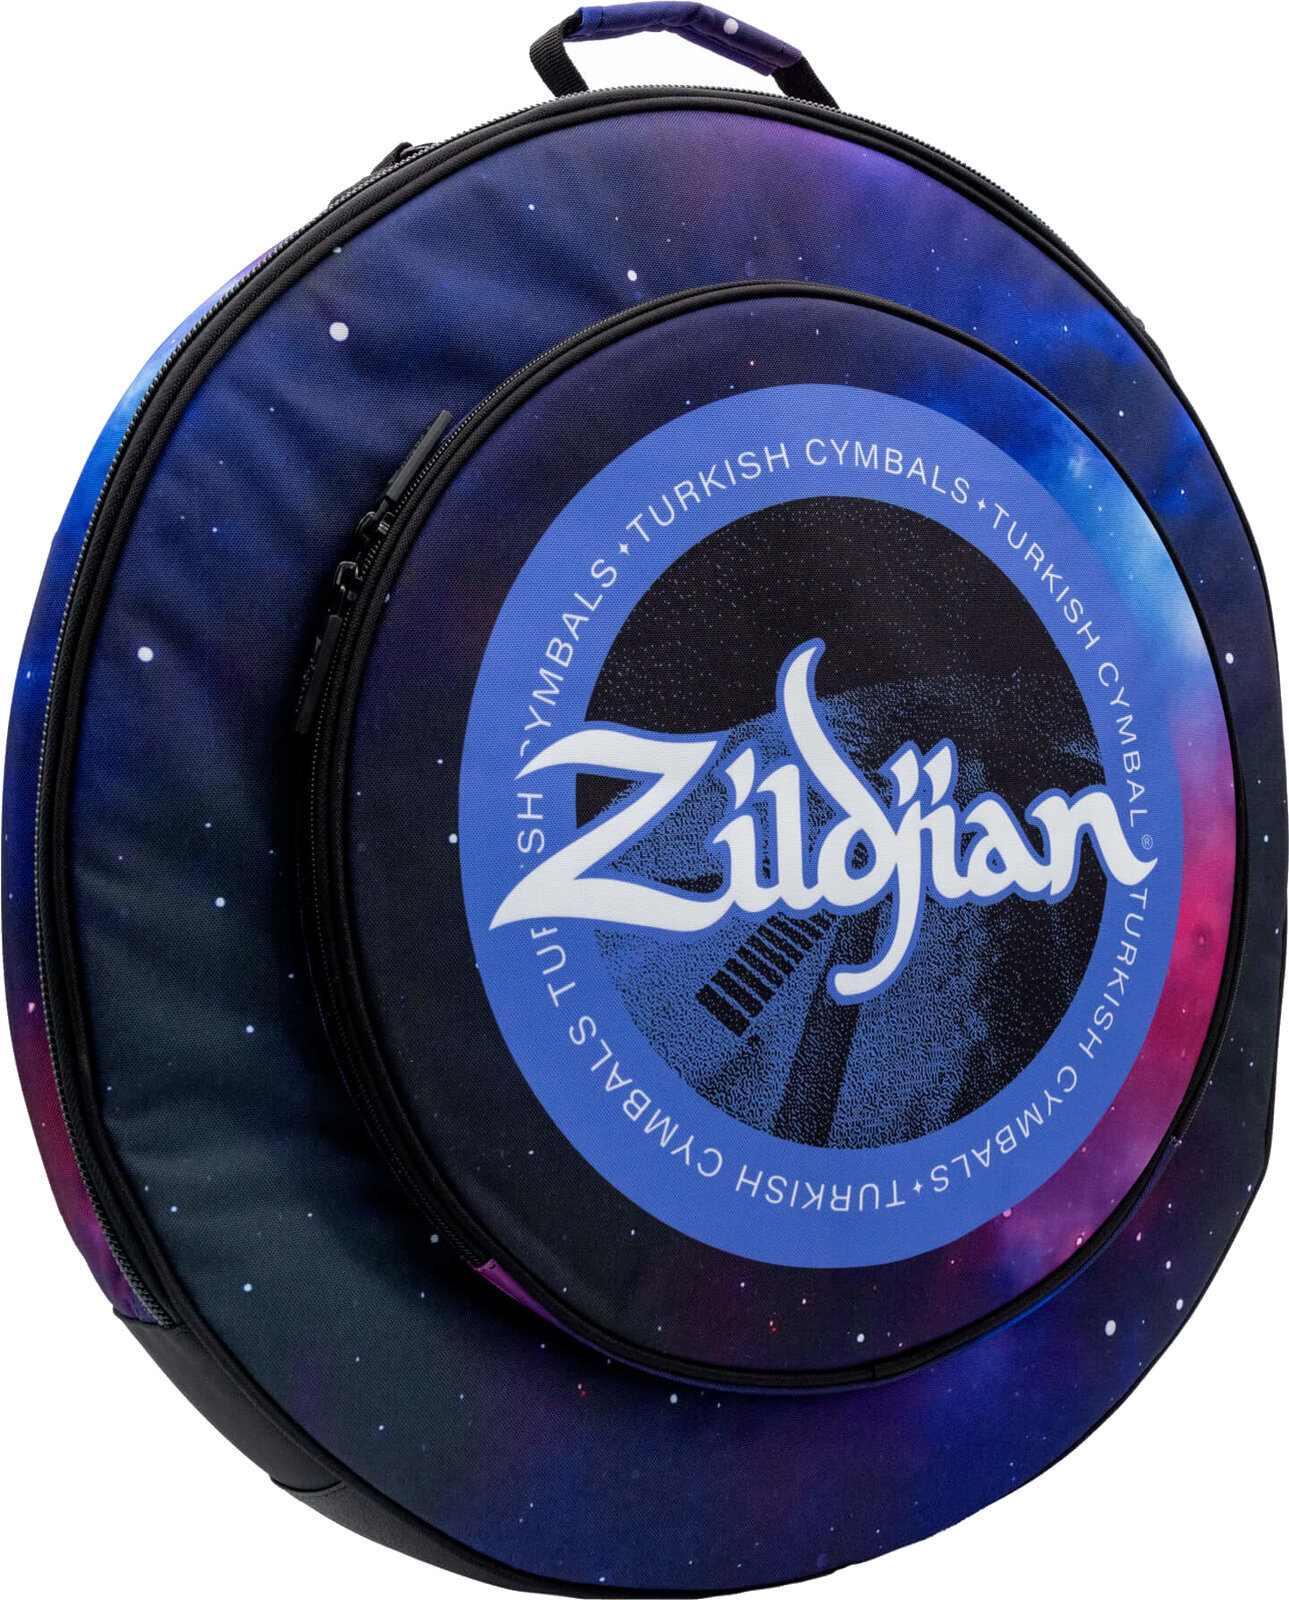 Beschermhoes voor bekkens Zildjian 20" Student Cymbal Bag Purple Galaxy Beschermhoes voor bekkens